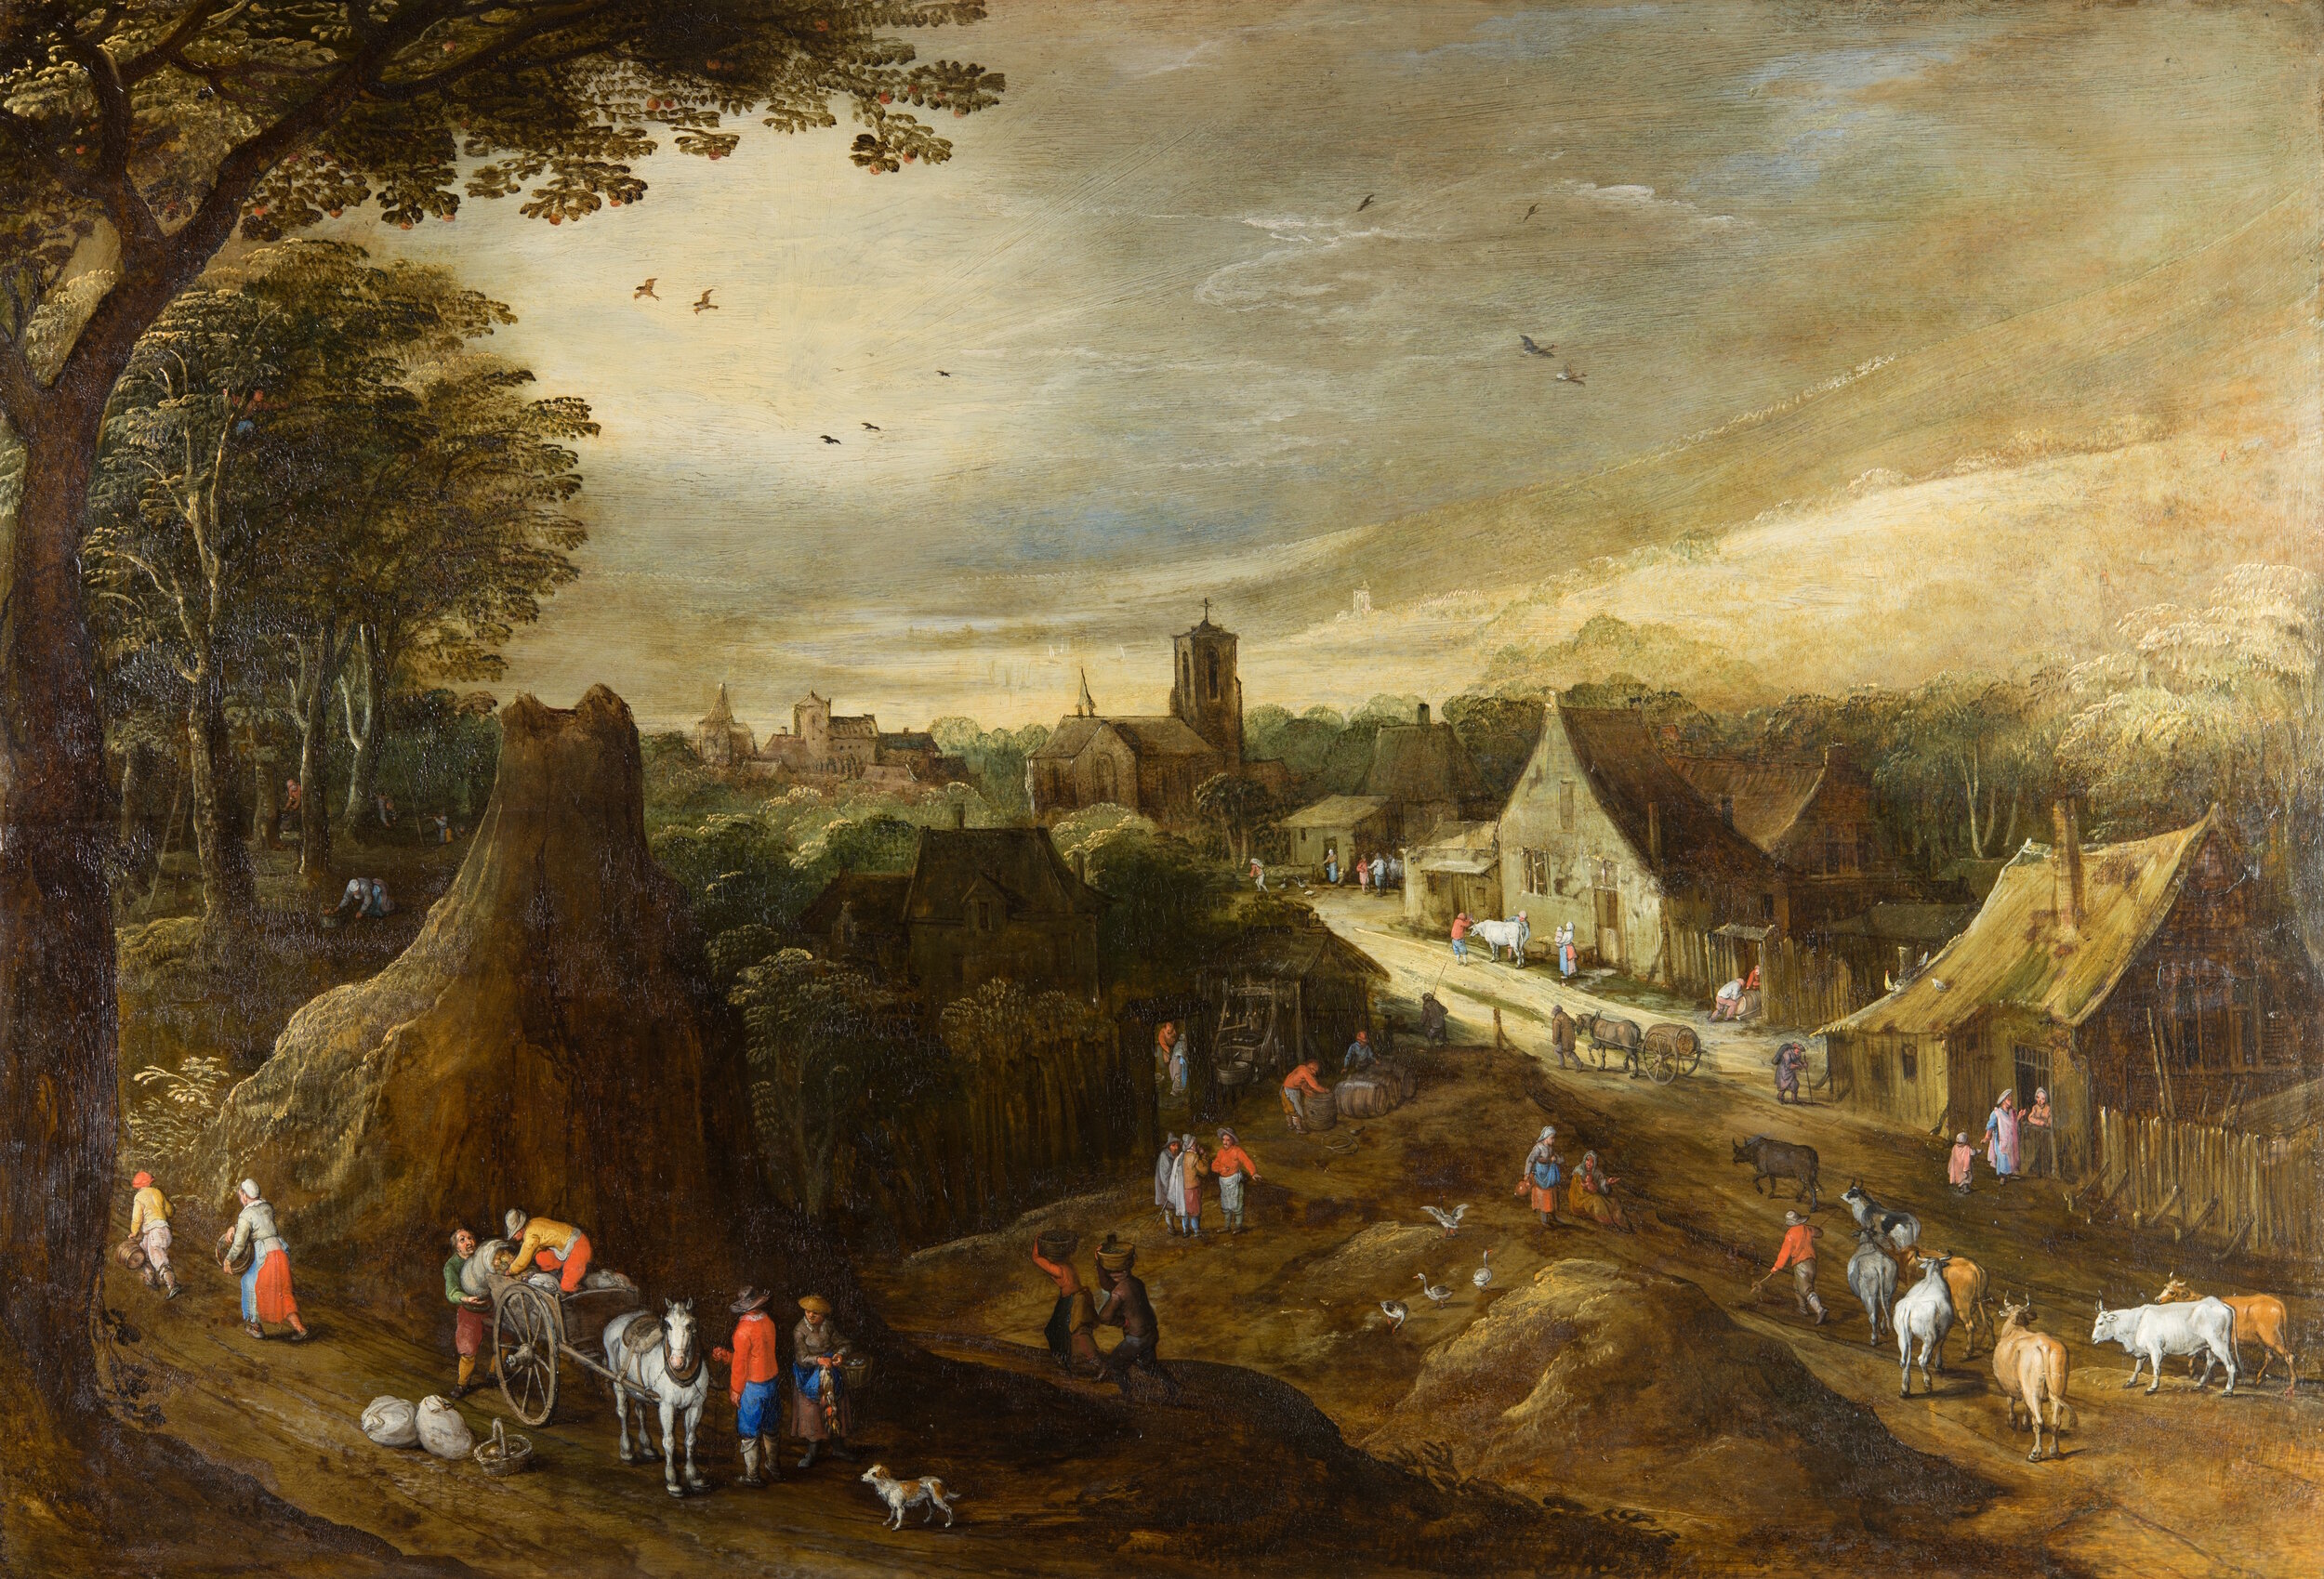 Episode 2 - 'Autumn' by Joos de Momper and Jan Brueghel the Elder (workshop of)